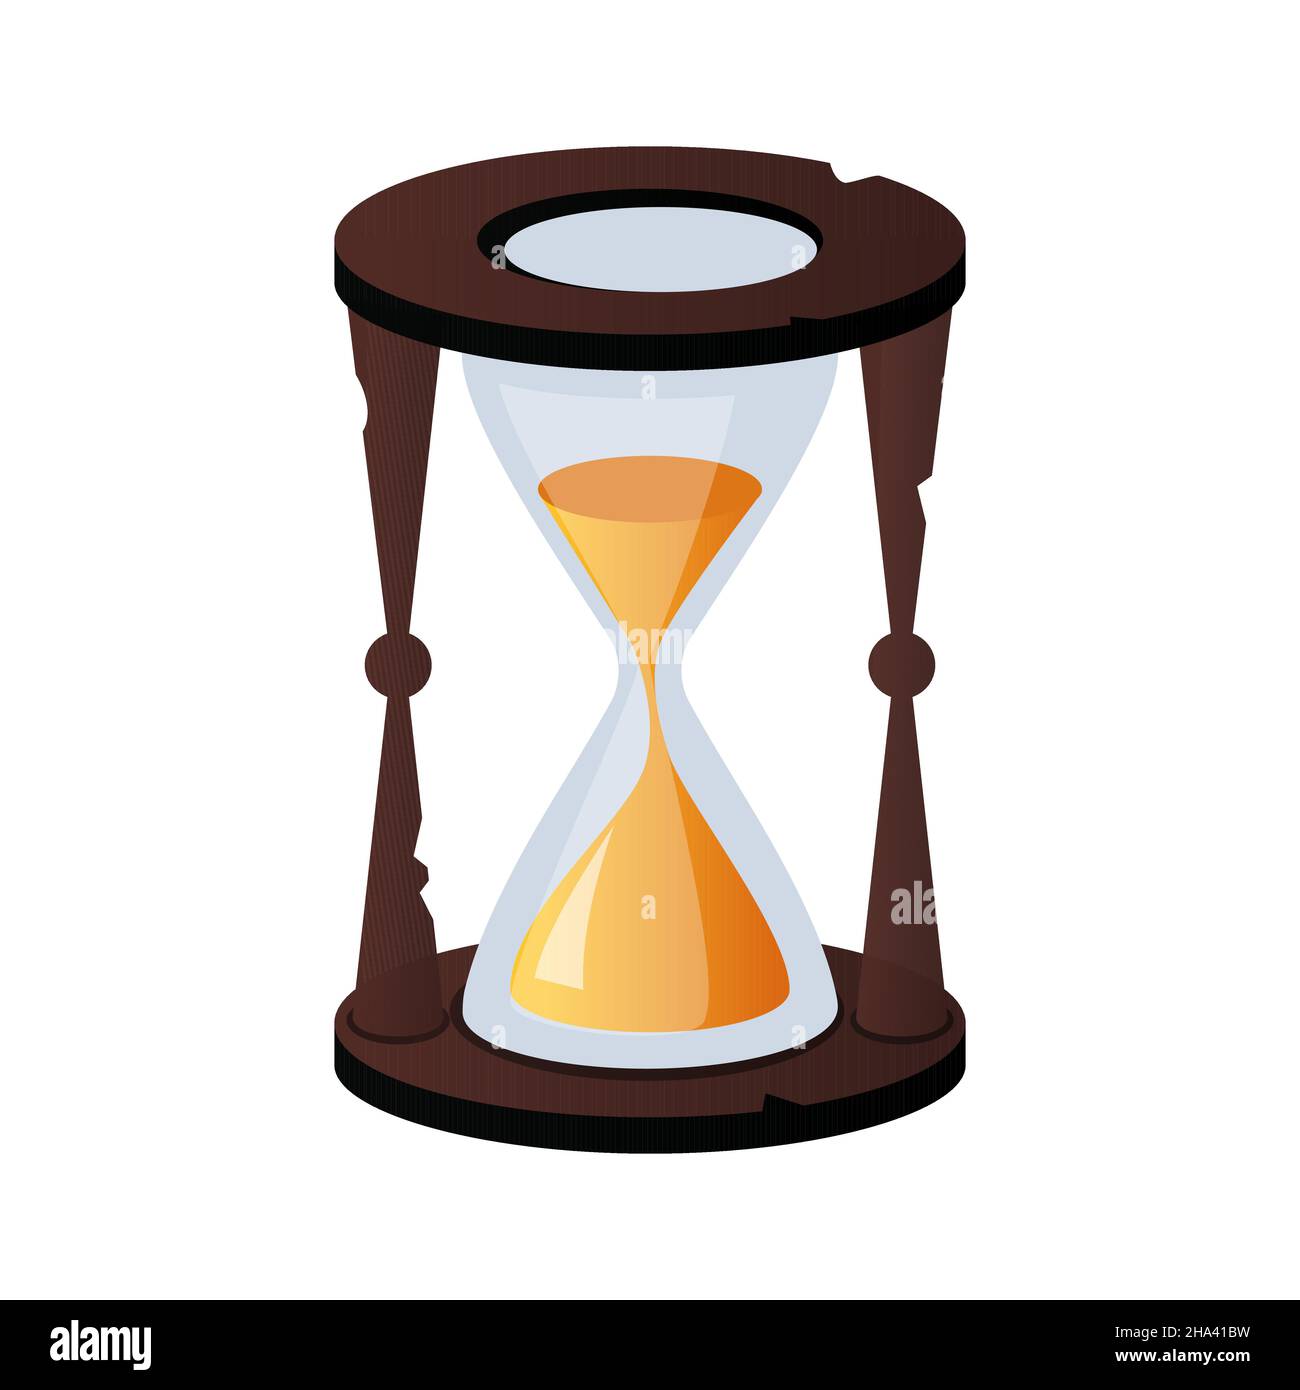 Hourglass - modernes flaches Design-Stil einzelnes isoliertes Objekt. Ordentliches, detailliertes Bild von Sandglas als Symbol der Zeitvergänglichkeit. Sie helfen zu definieren Stock Vektor